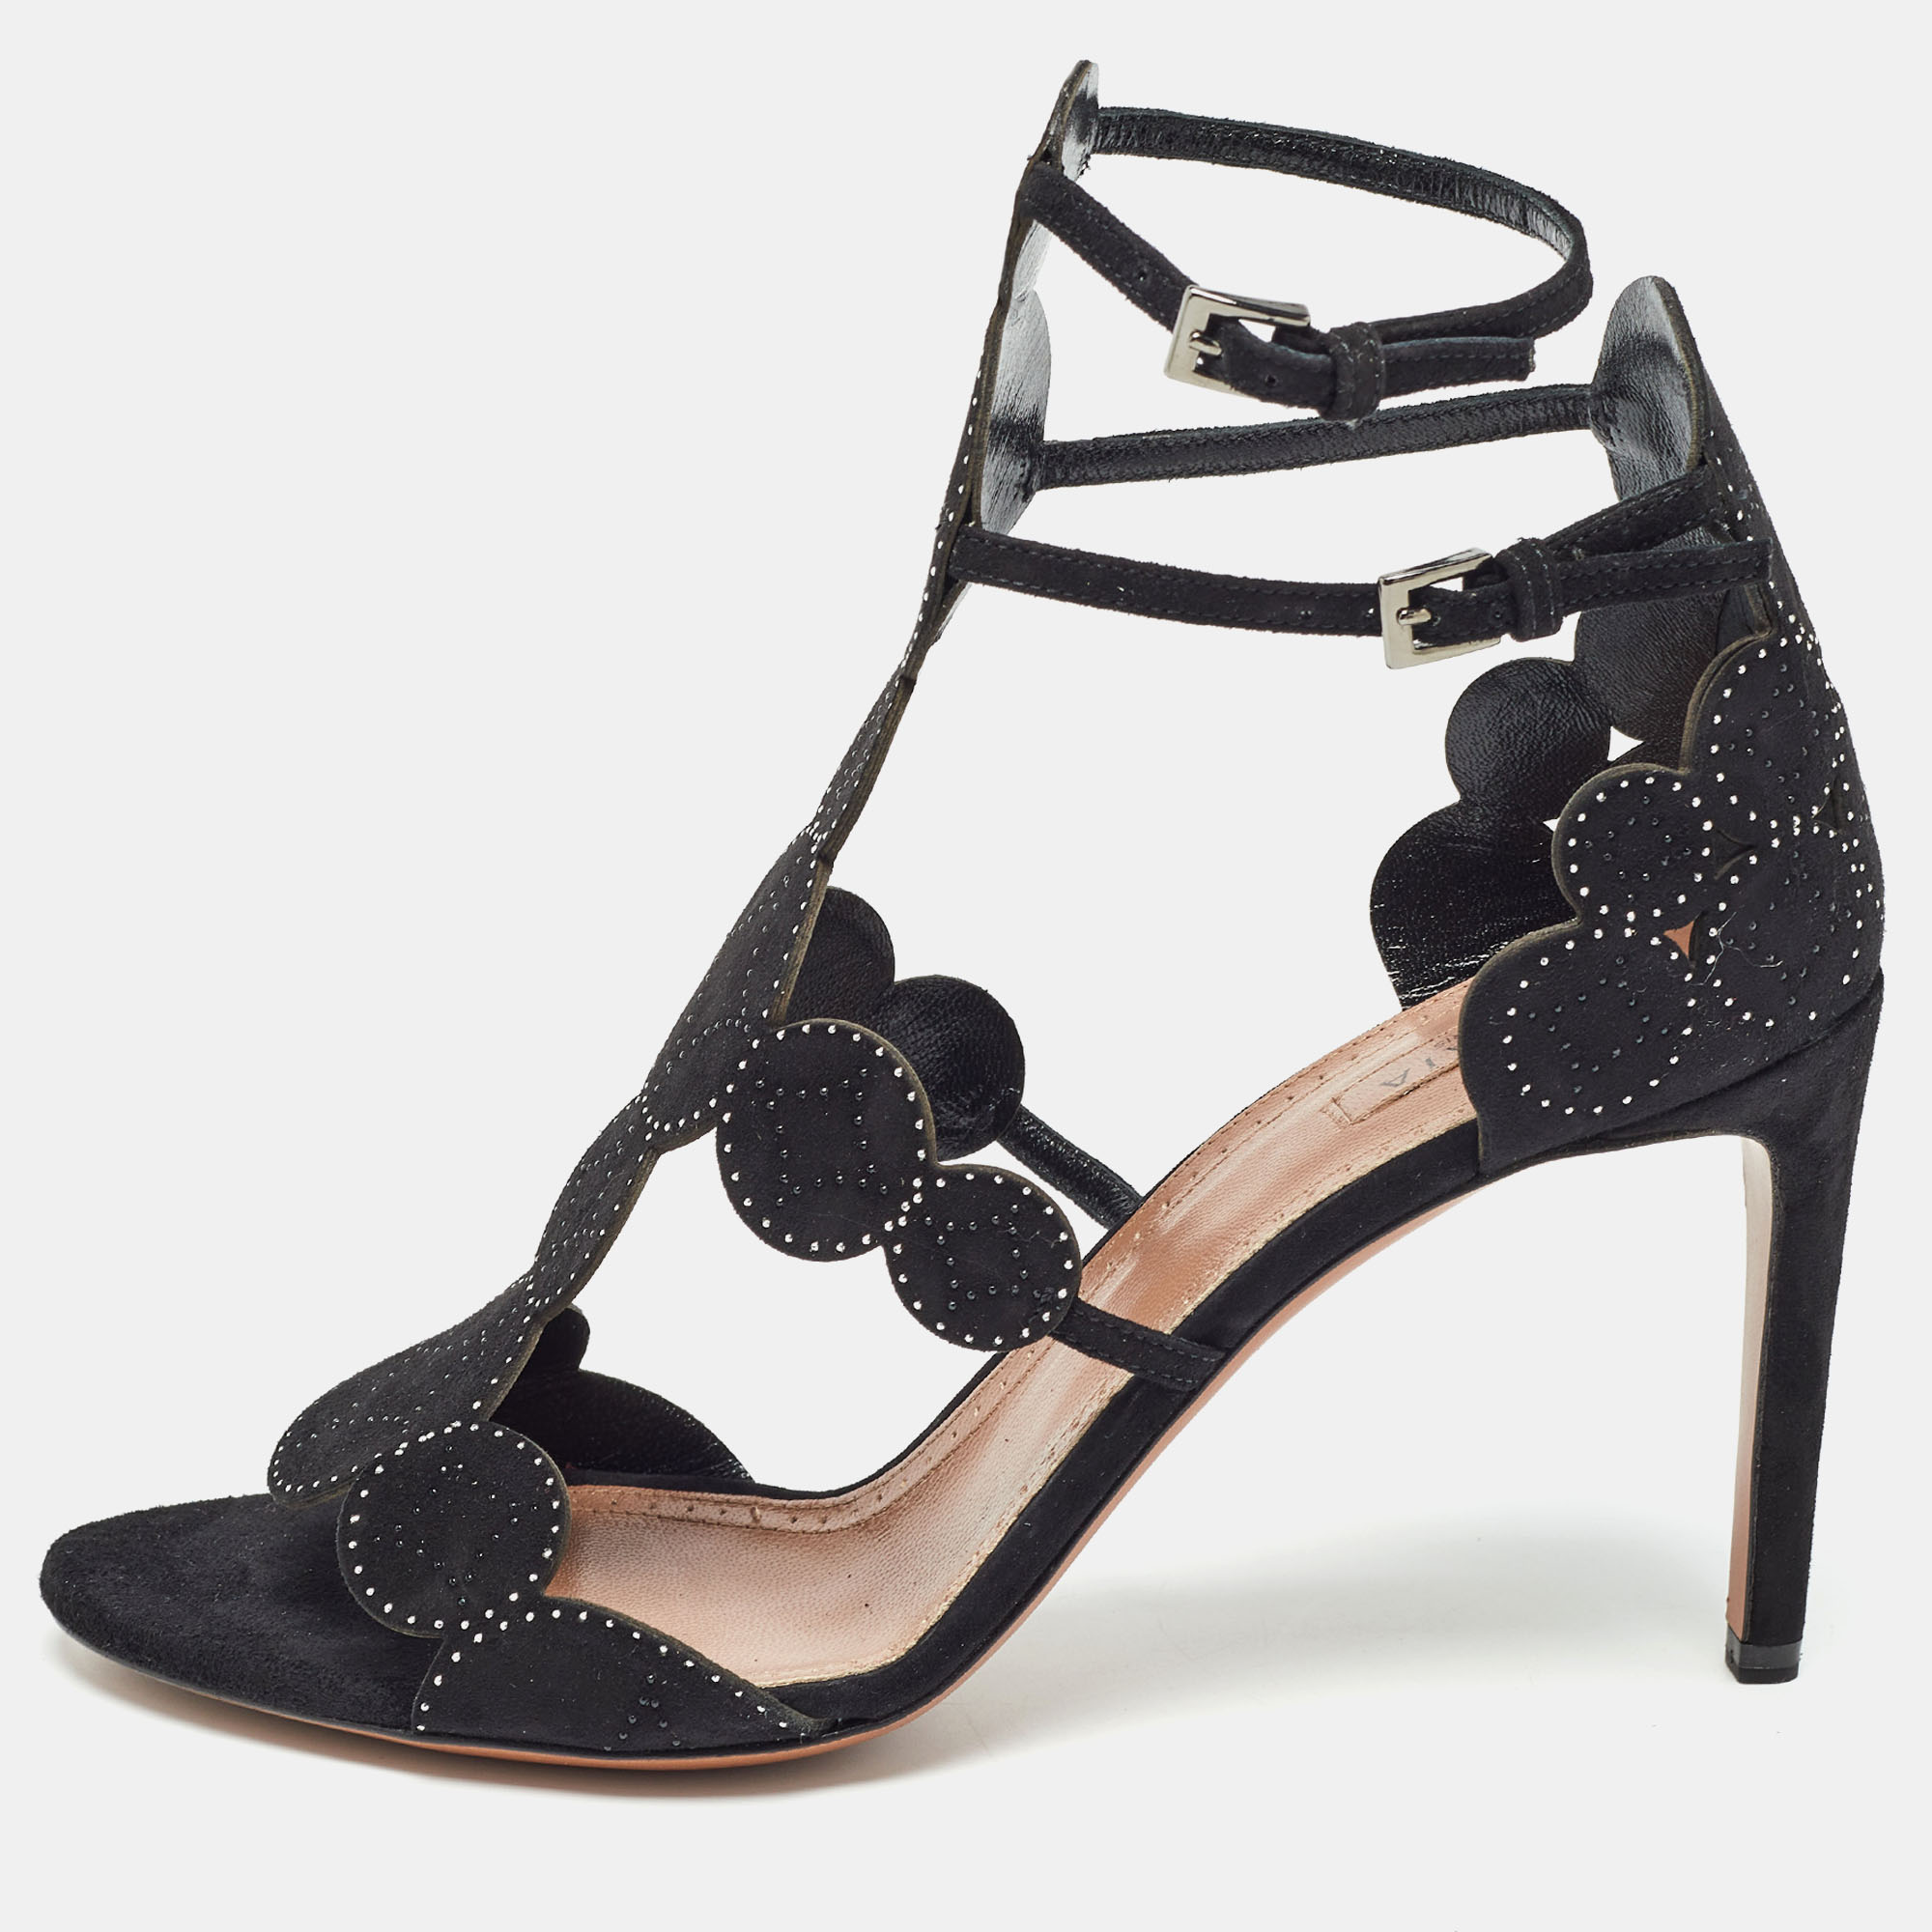 Alaia black suede crystal embellished ankle strap sandals size 38.5